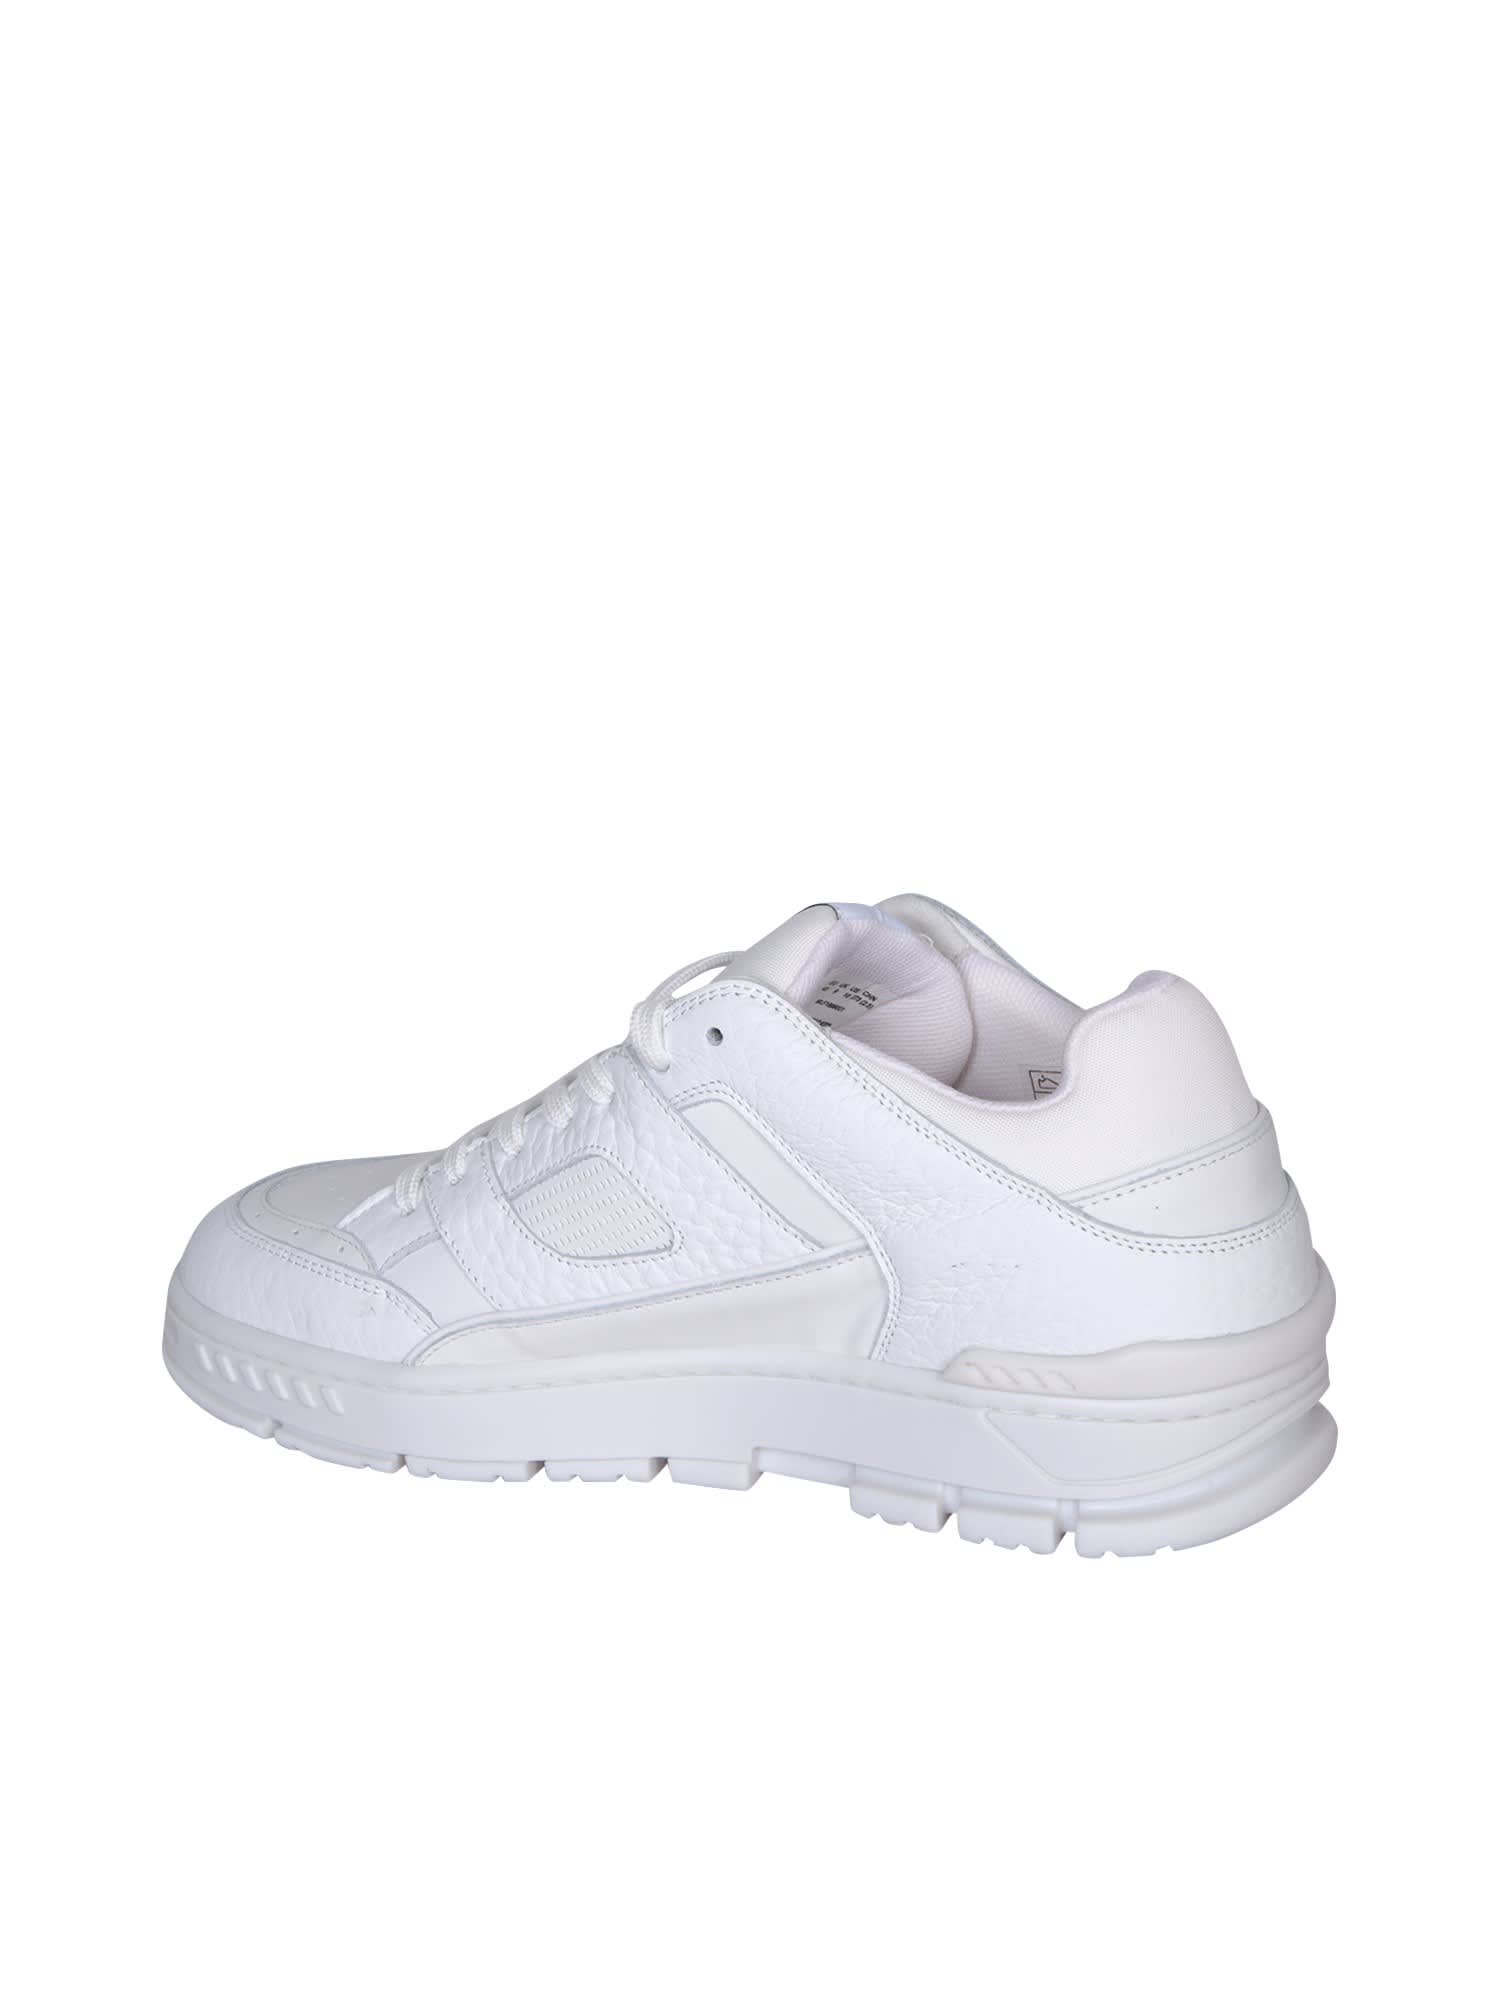 Shop Axel Arigato Area Lo White Sneakers